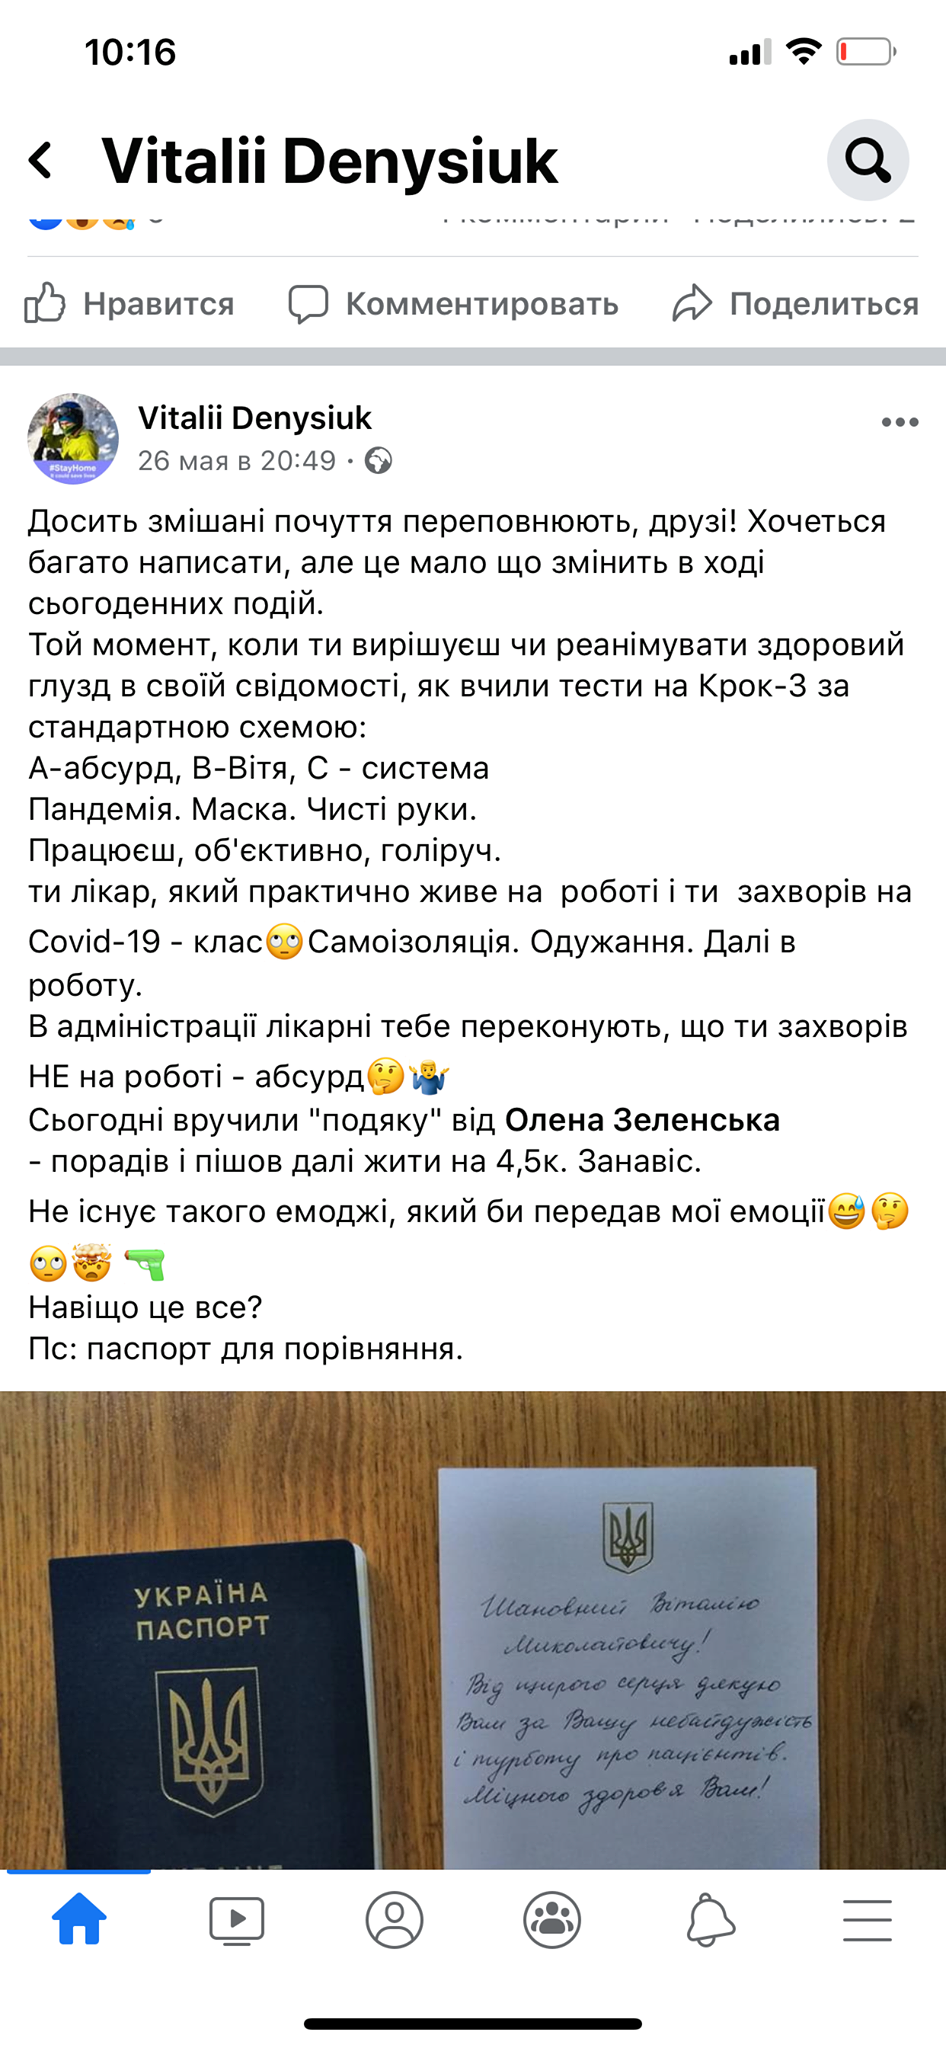 Пост врача Денисюка об открытке от Зеленской. Скриншот: Facebook